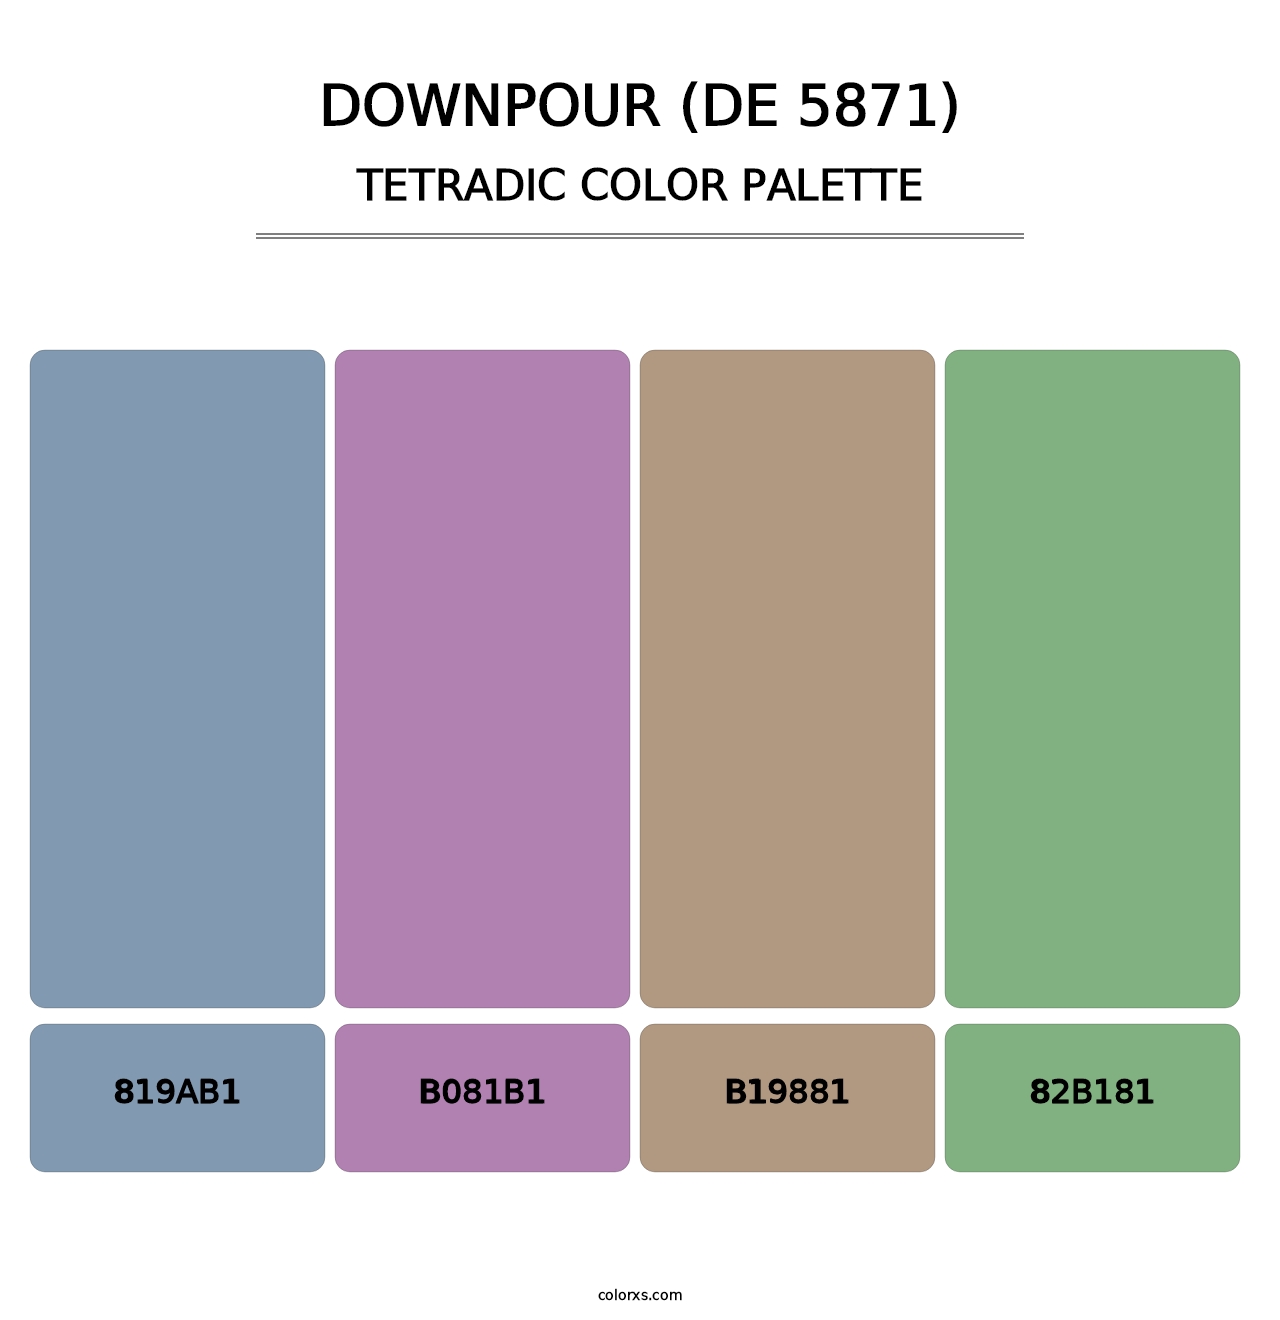 Downpour (DE 5871) - Tetradic Color Palette